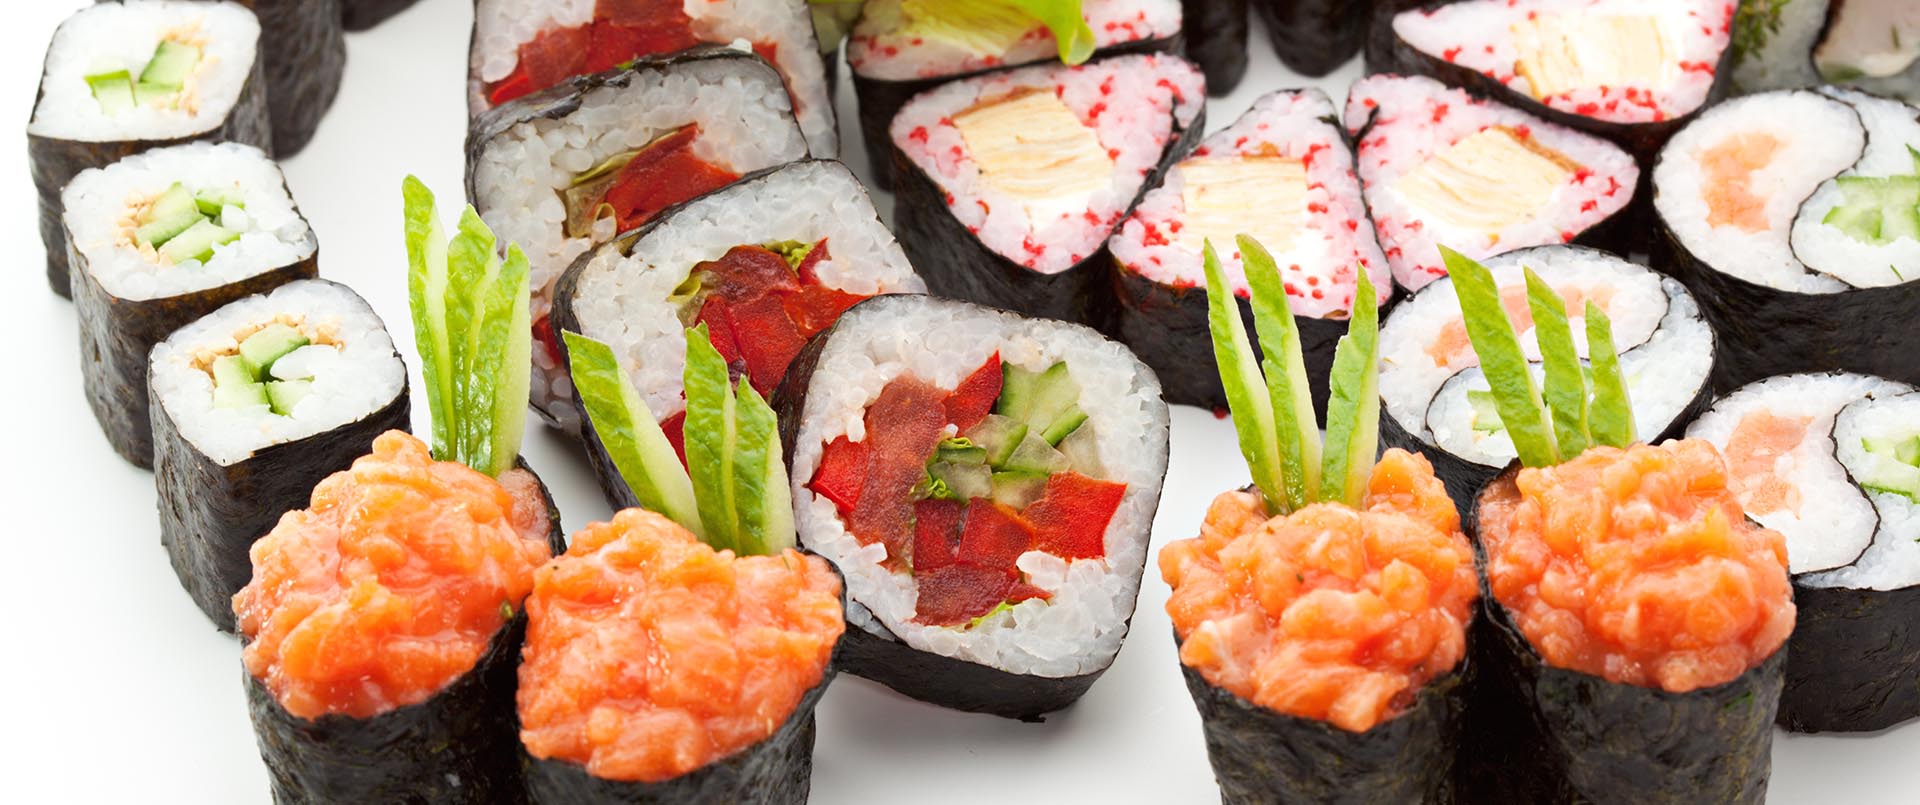 Fijnmazige distributie van sushi